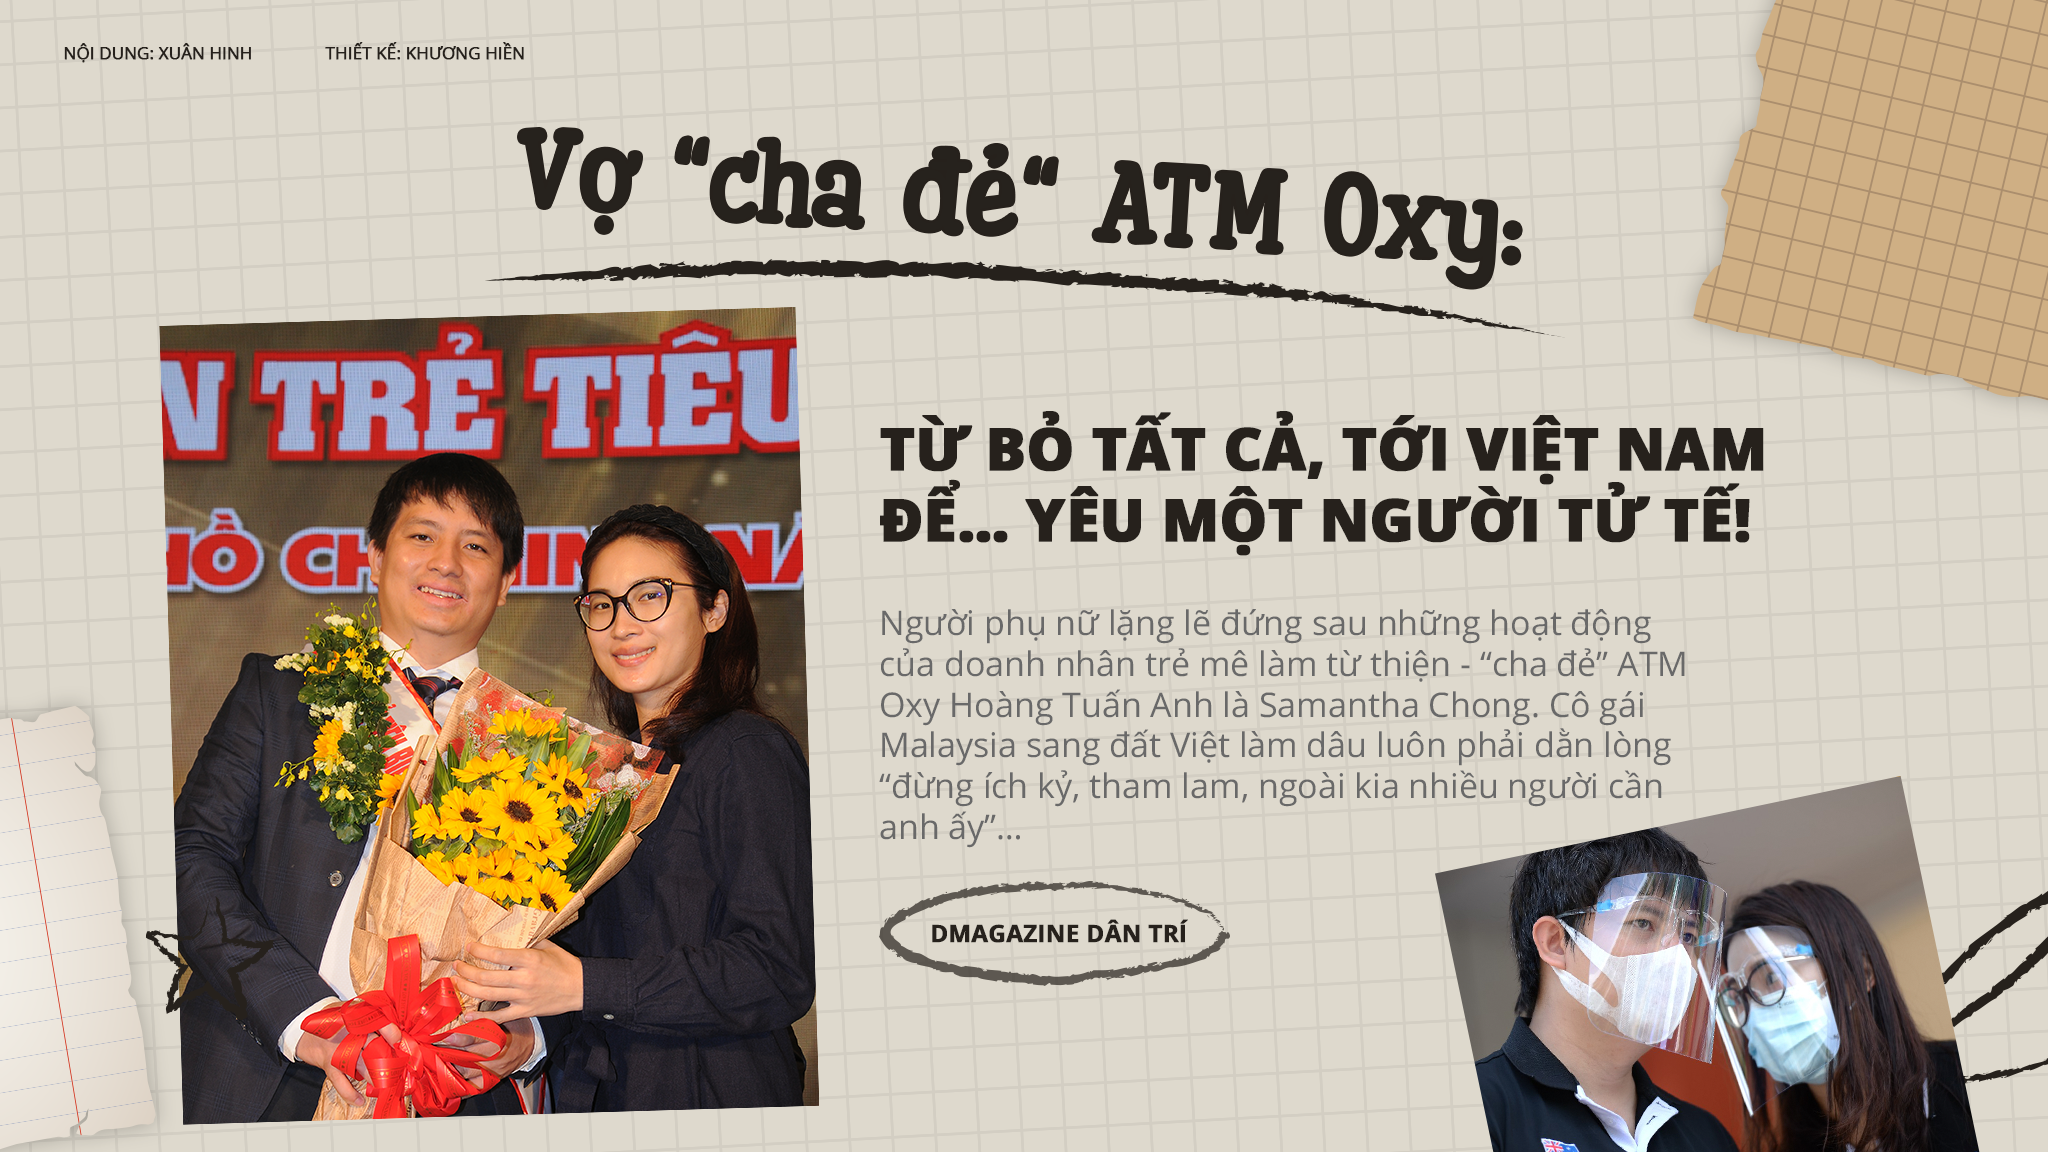 Bí mật về một "hậu phương" bỏ tất cả, tới Việt Nam để yêu "cha đẻ ATM Oxy"